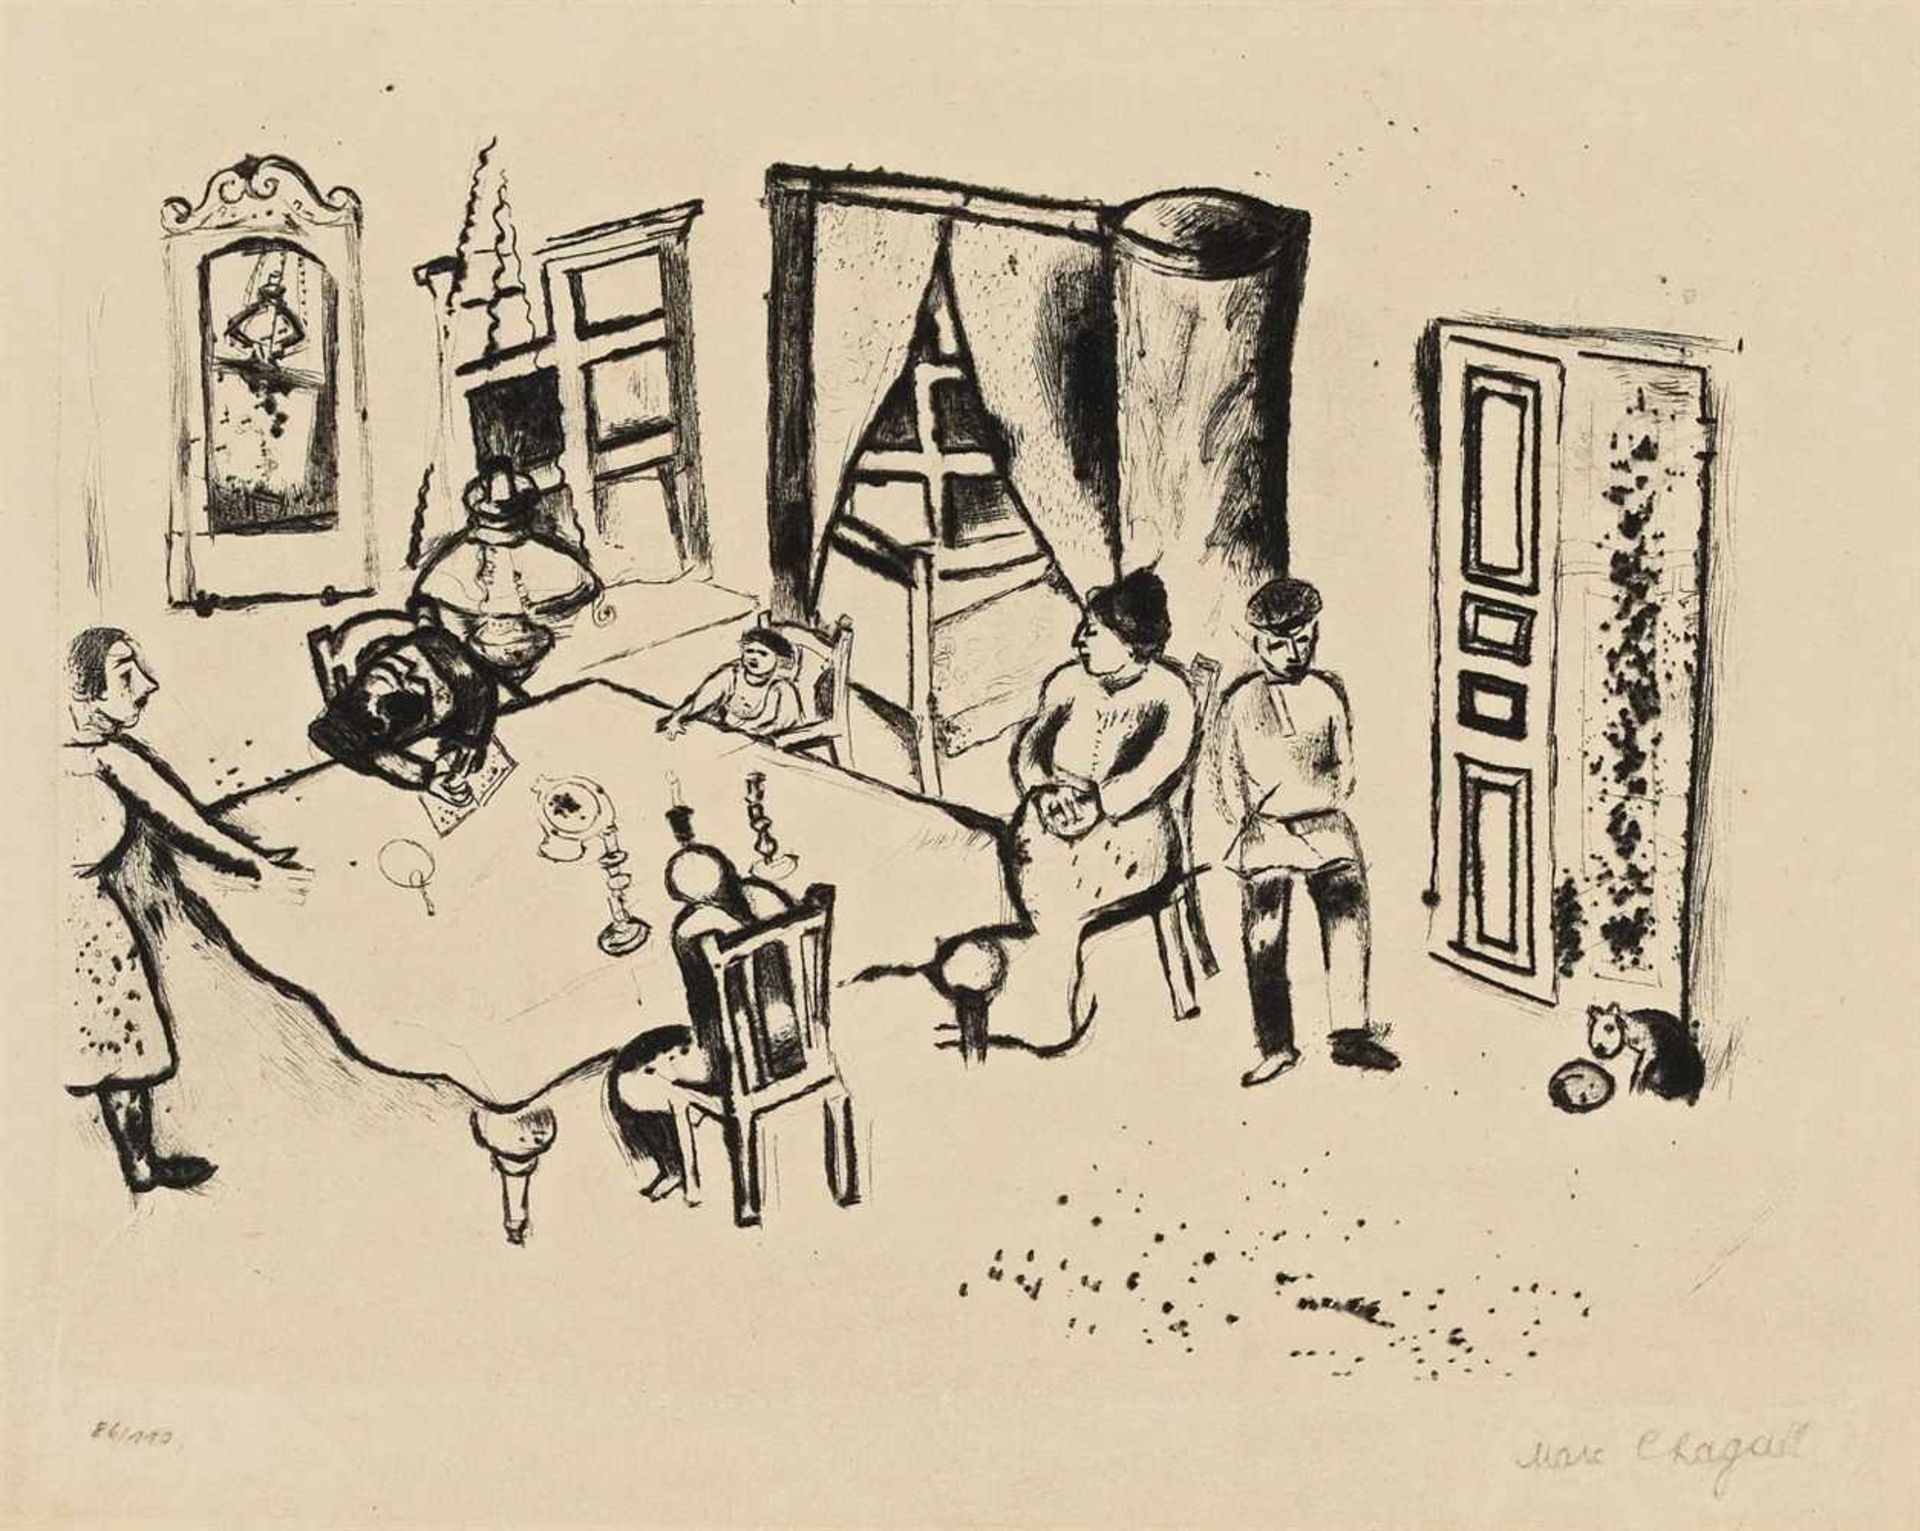 Marc ChagallSpeisezimmer Kaltnadelradierung auf cremefarbenem Bütten. 27,6 x 21,7 cm (44,4 x 33 cm).